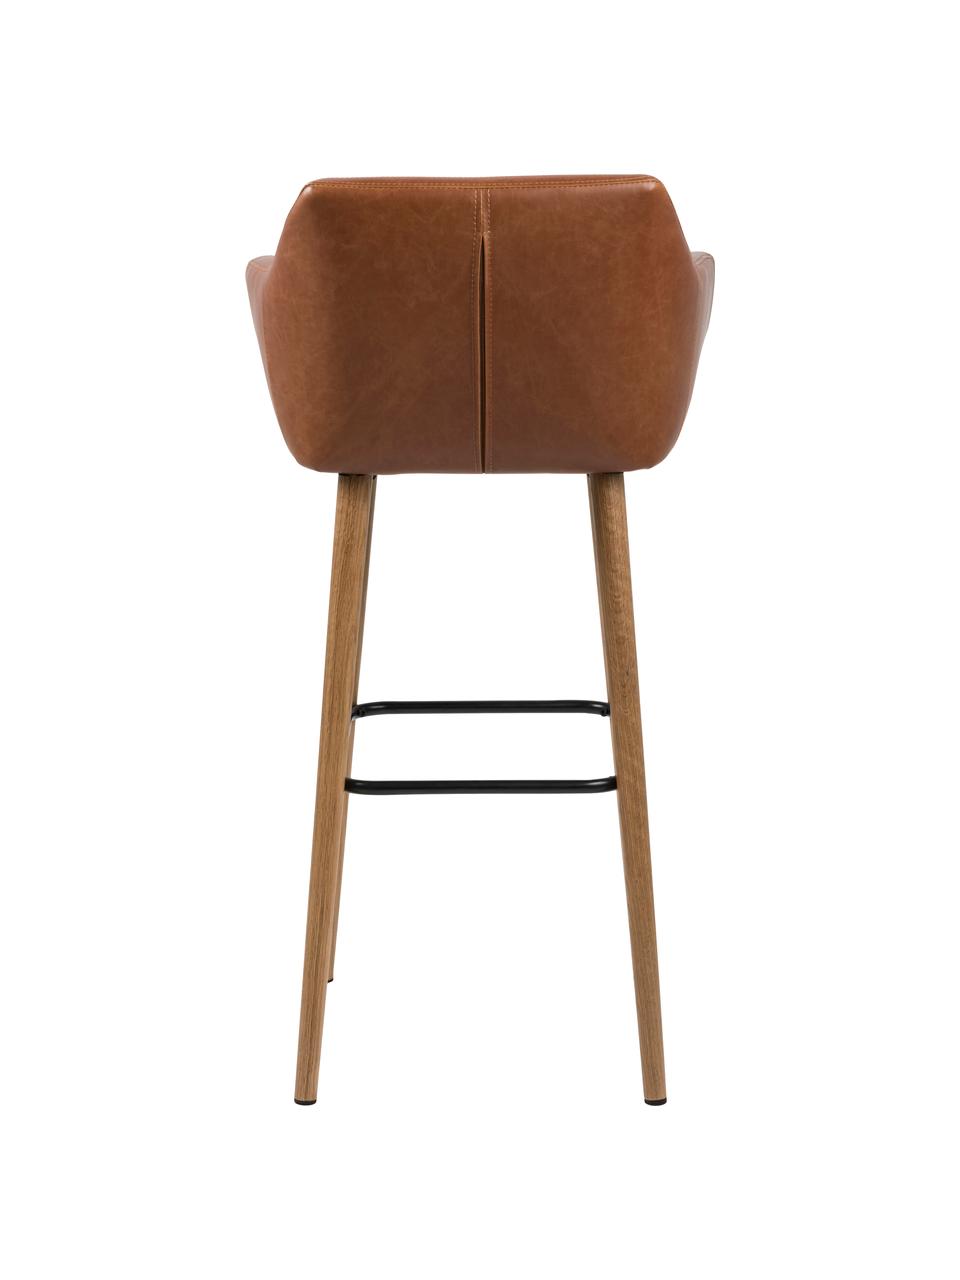 Barová židle z imitace kůže Nora, Imitace kůže, koňak Nohy: dub, Š 55 cm, V 101 cm